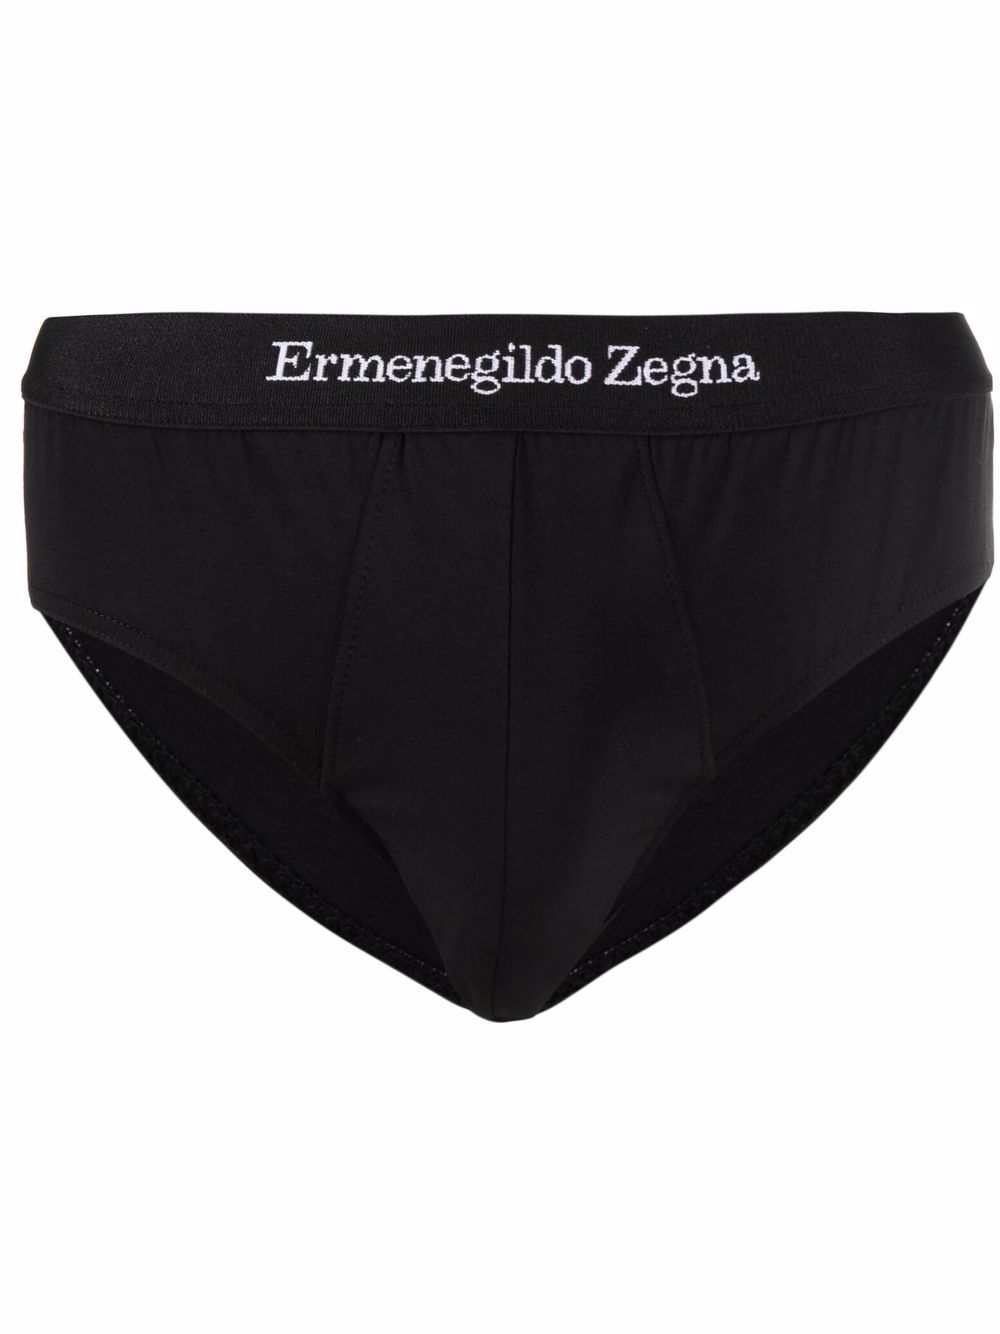 фото Ermenegildo zegna трусы-брифы с логотипом